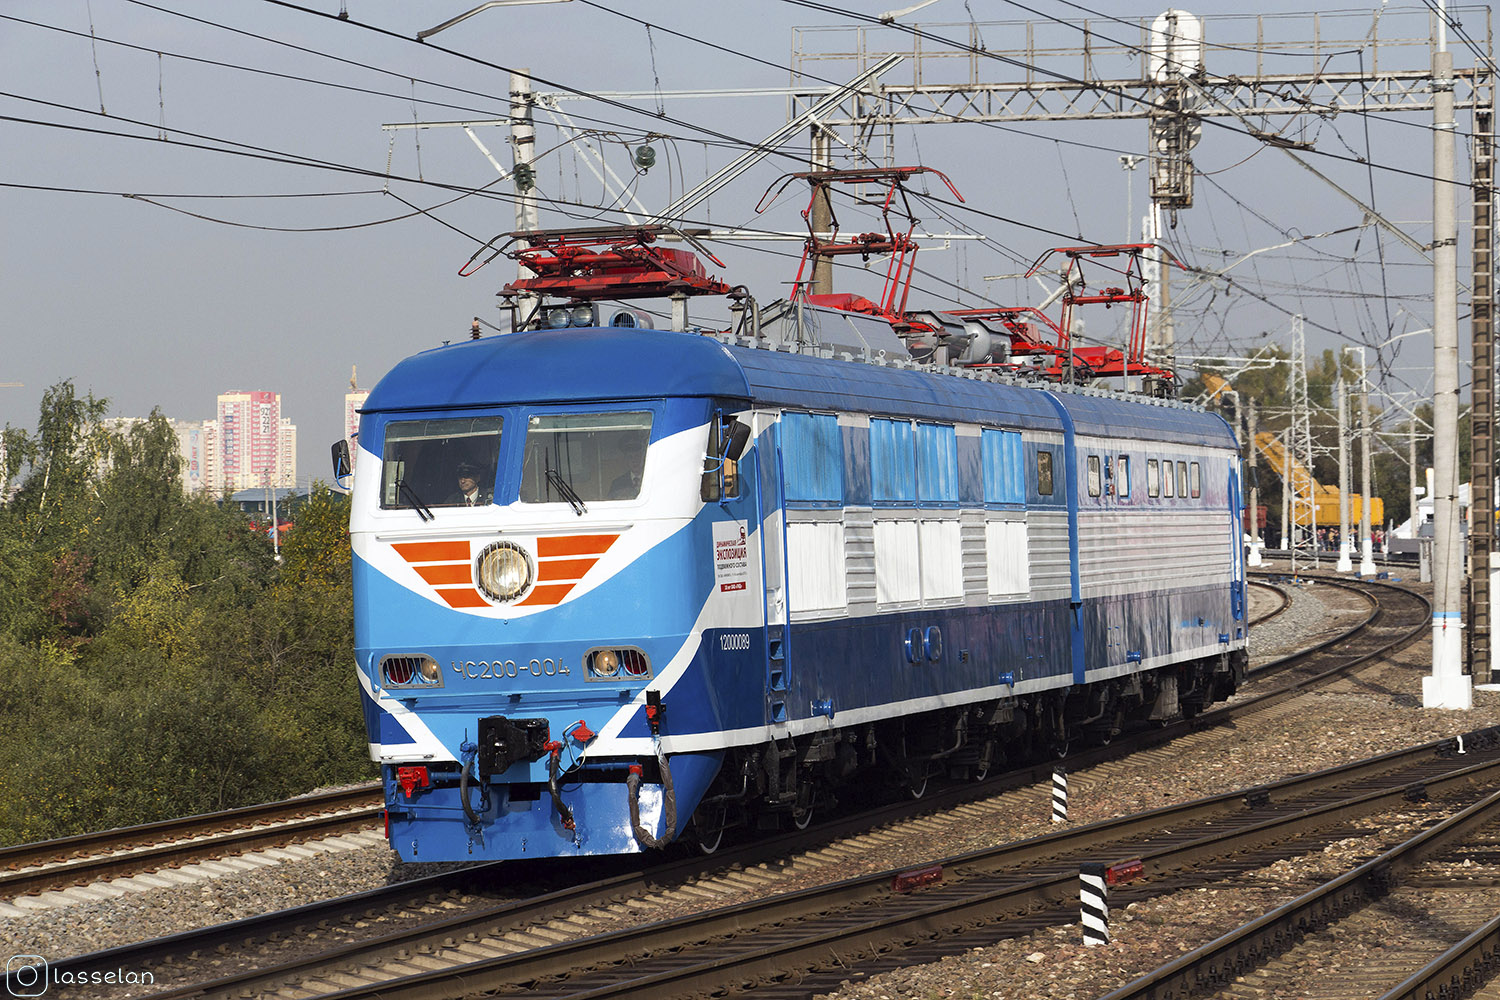 ЧС200-004; Московская железная дорога — IV Международный железнодорожный салон "ЭКСПО 1520" 2013